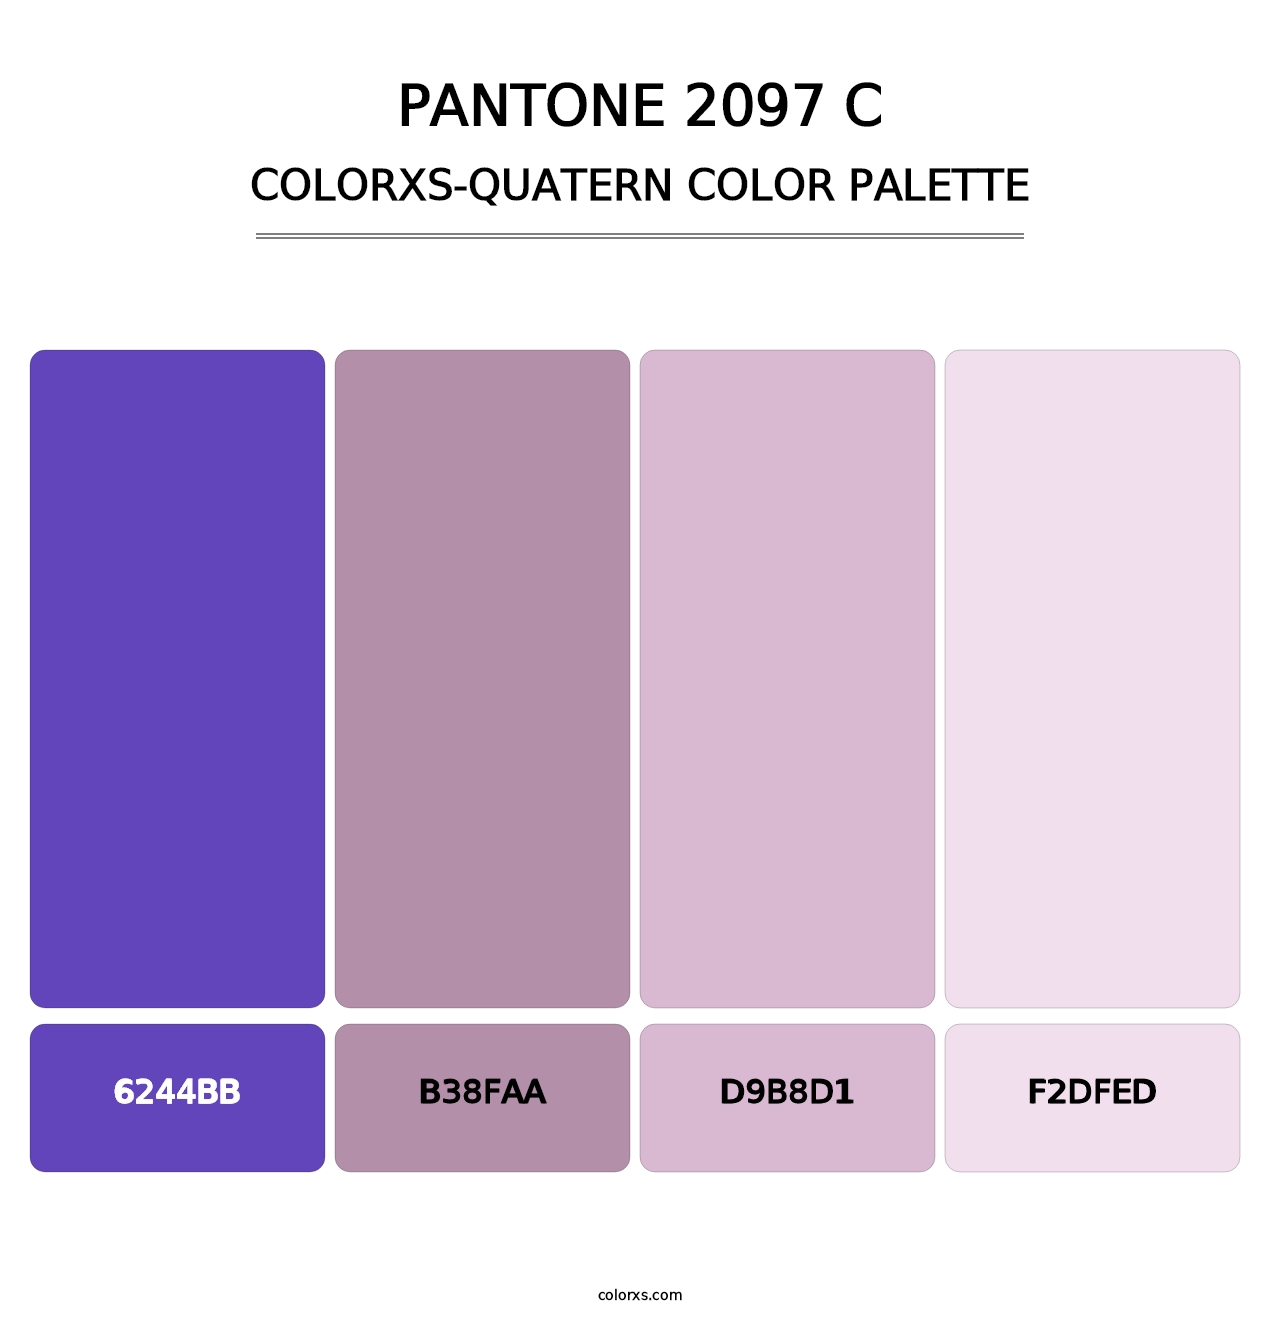 PANTONE 2097 C - Colorxs Quatern Palette